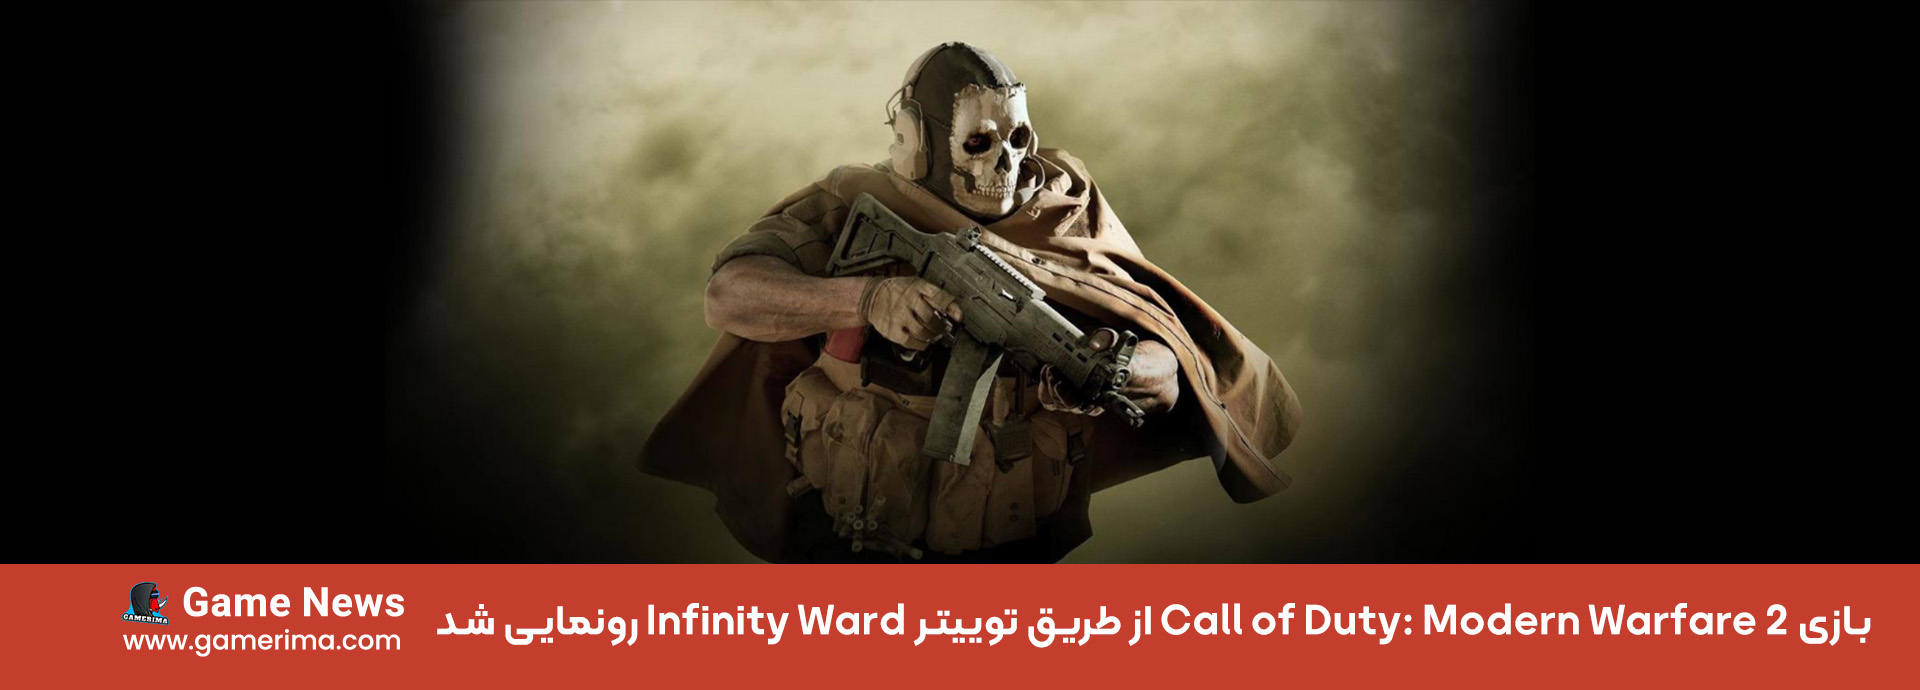 بازی Call of Duty : Modern Warfare 2 از طریق توییتر Infinity Ward رونمایی شد